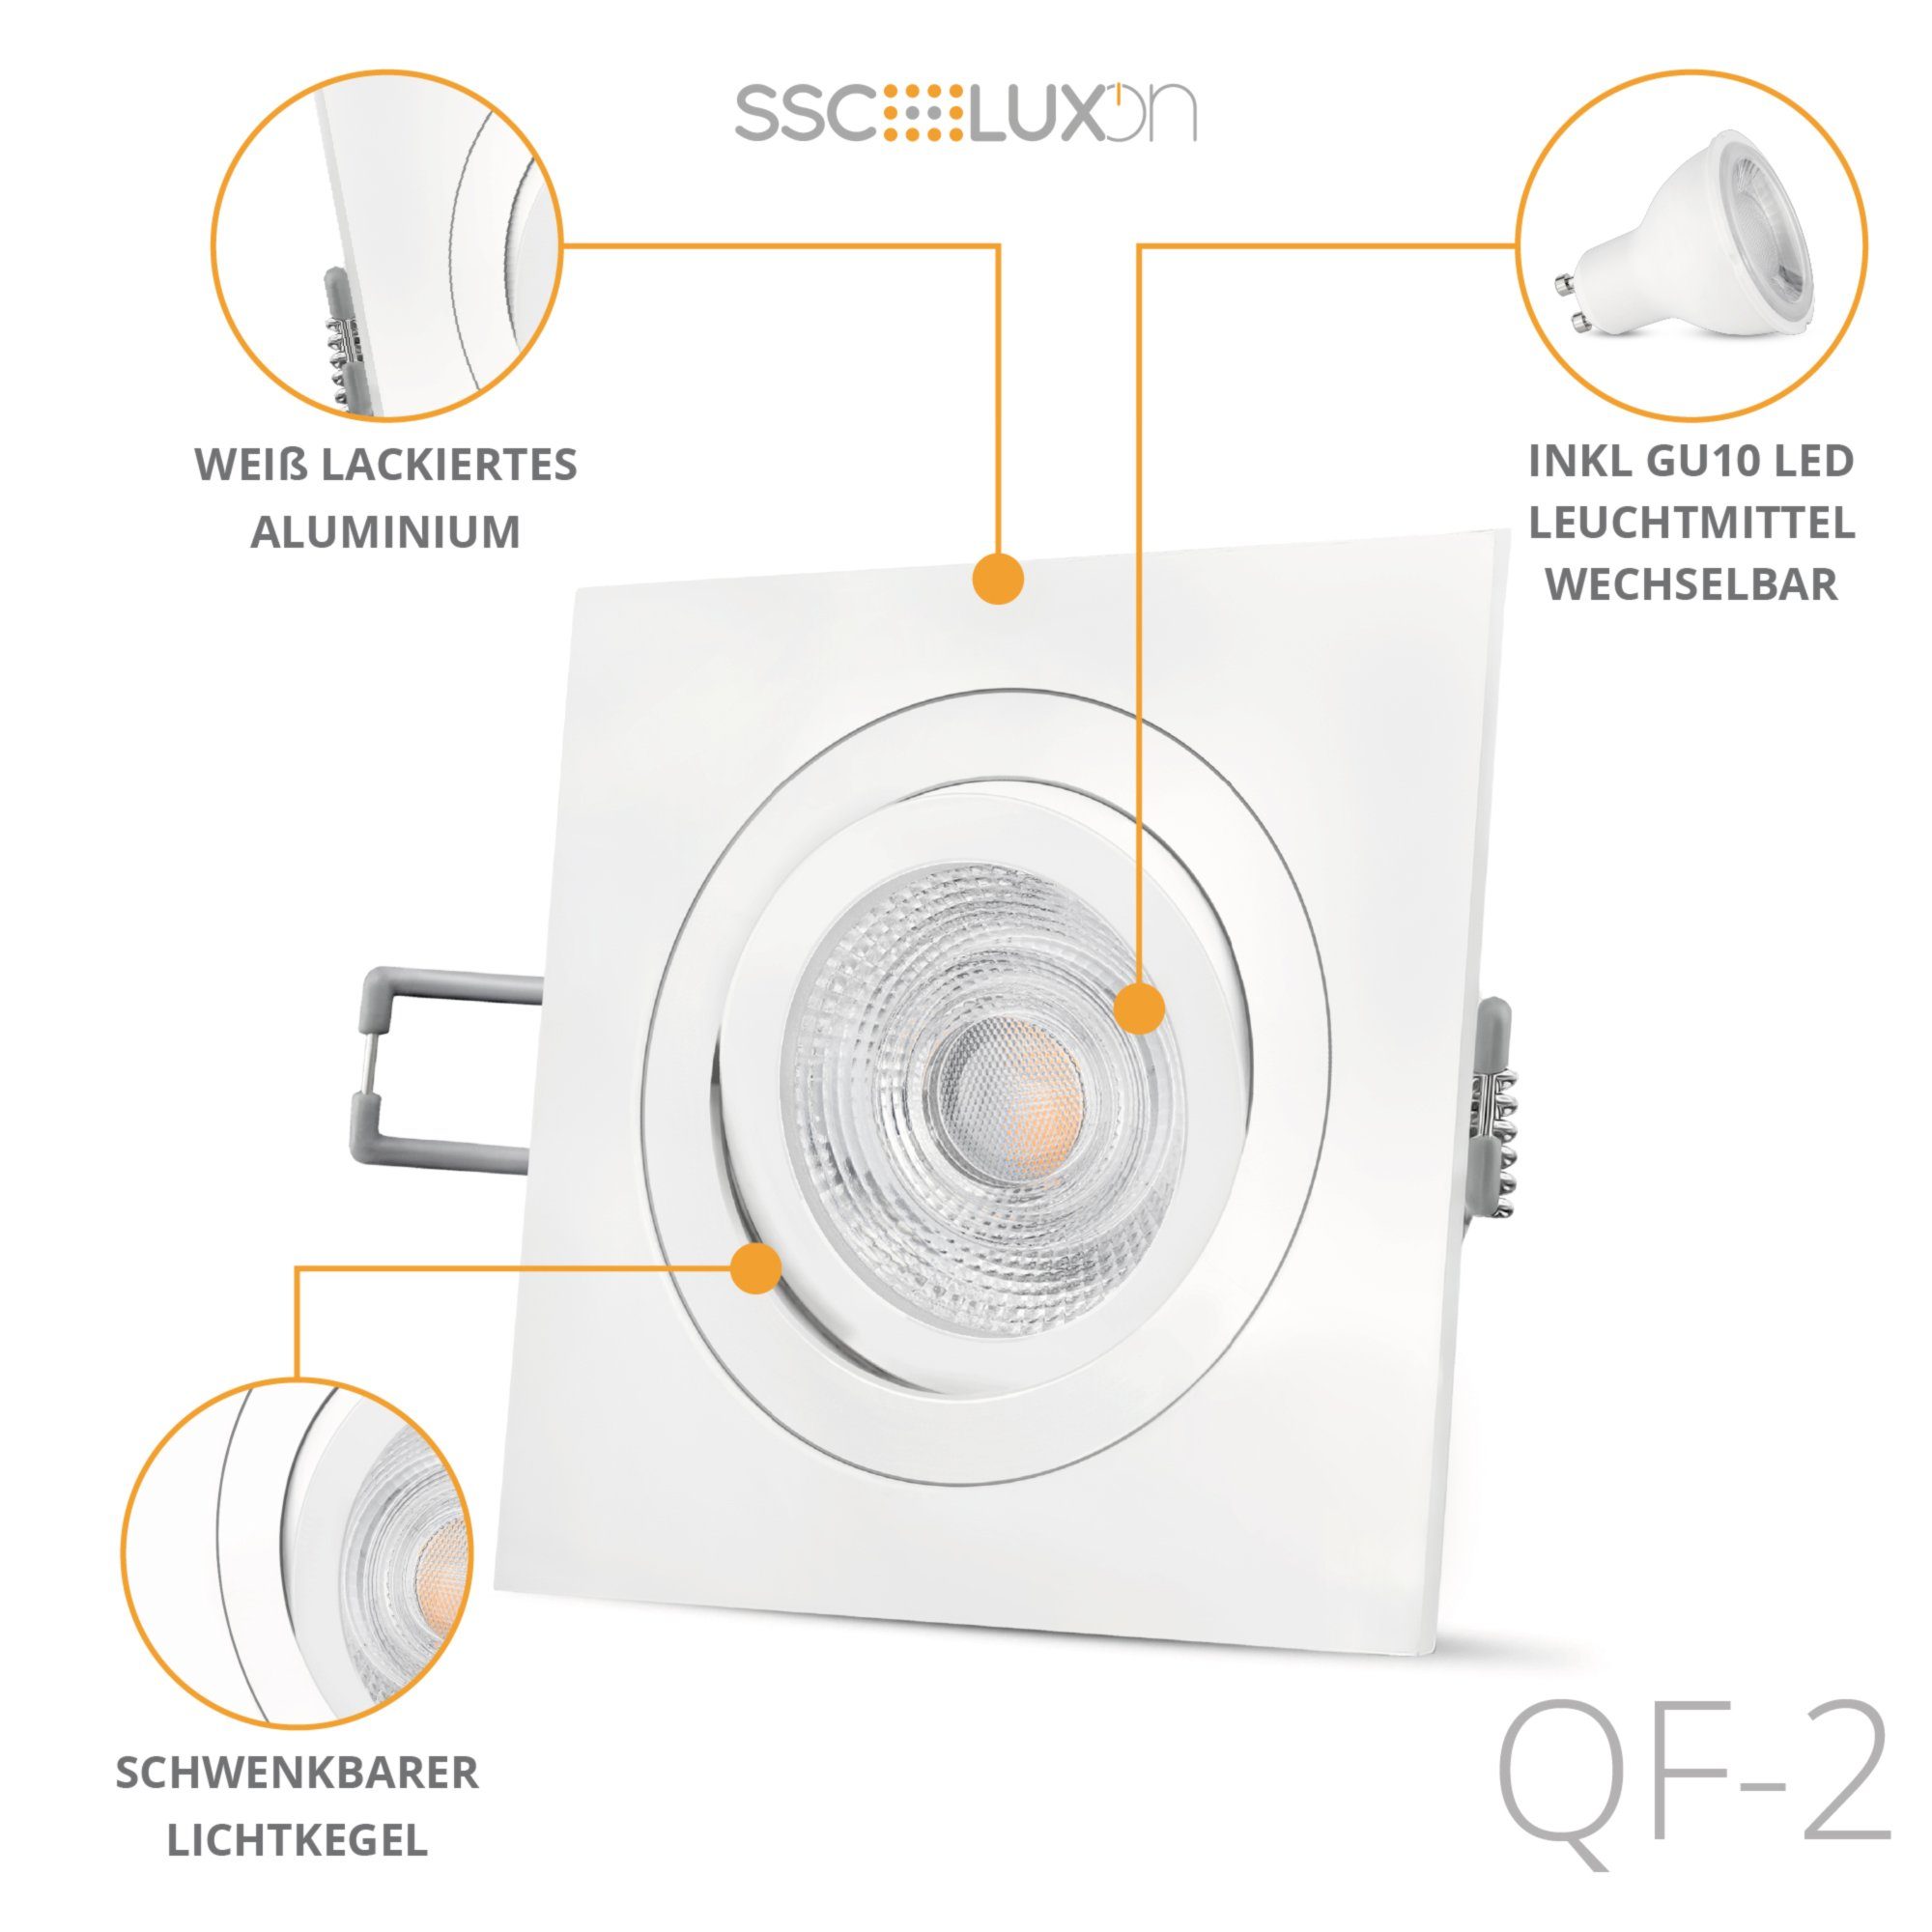 SSC-LUXon LED Einbaustrahler QF-2 LED Einbaustrahler schwenkbar LED, mit GU10 quadratisch weiss Warmweiß